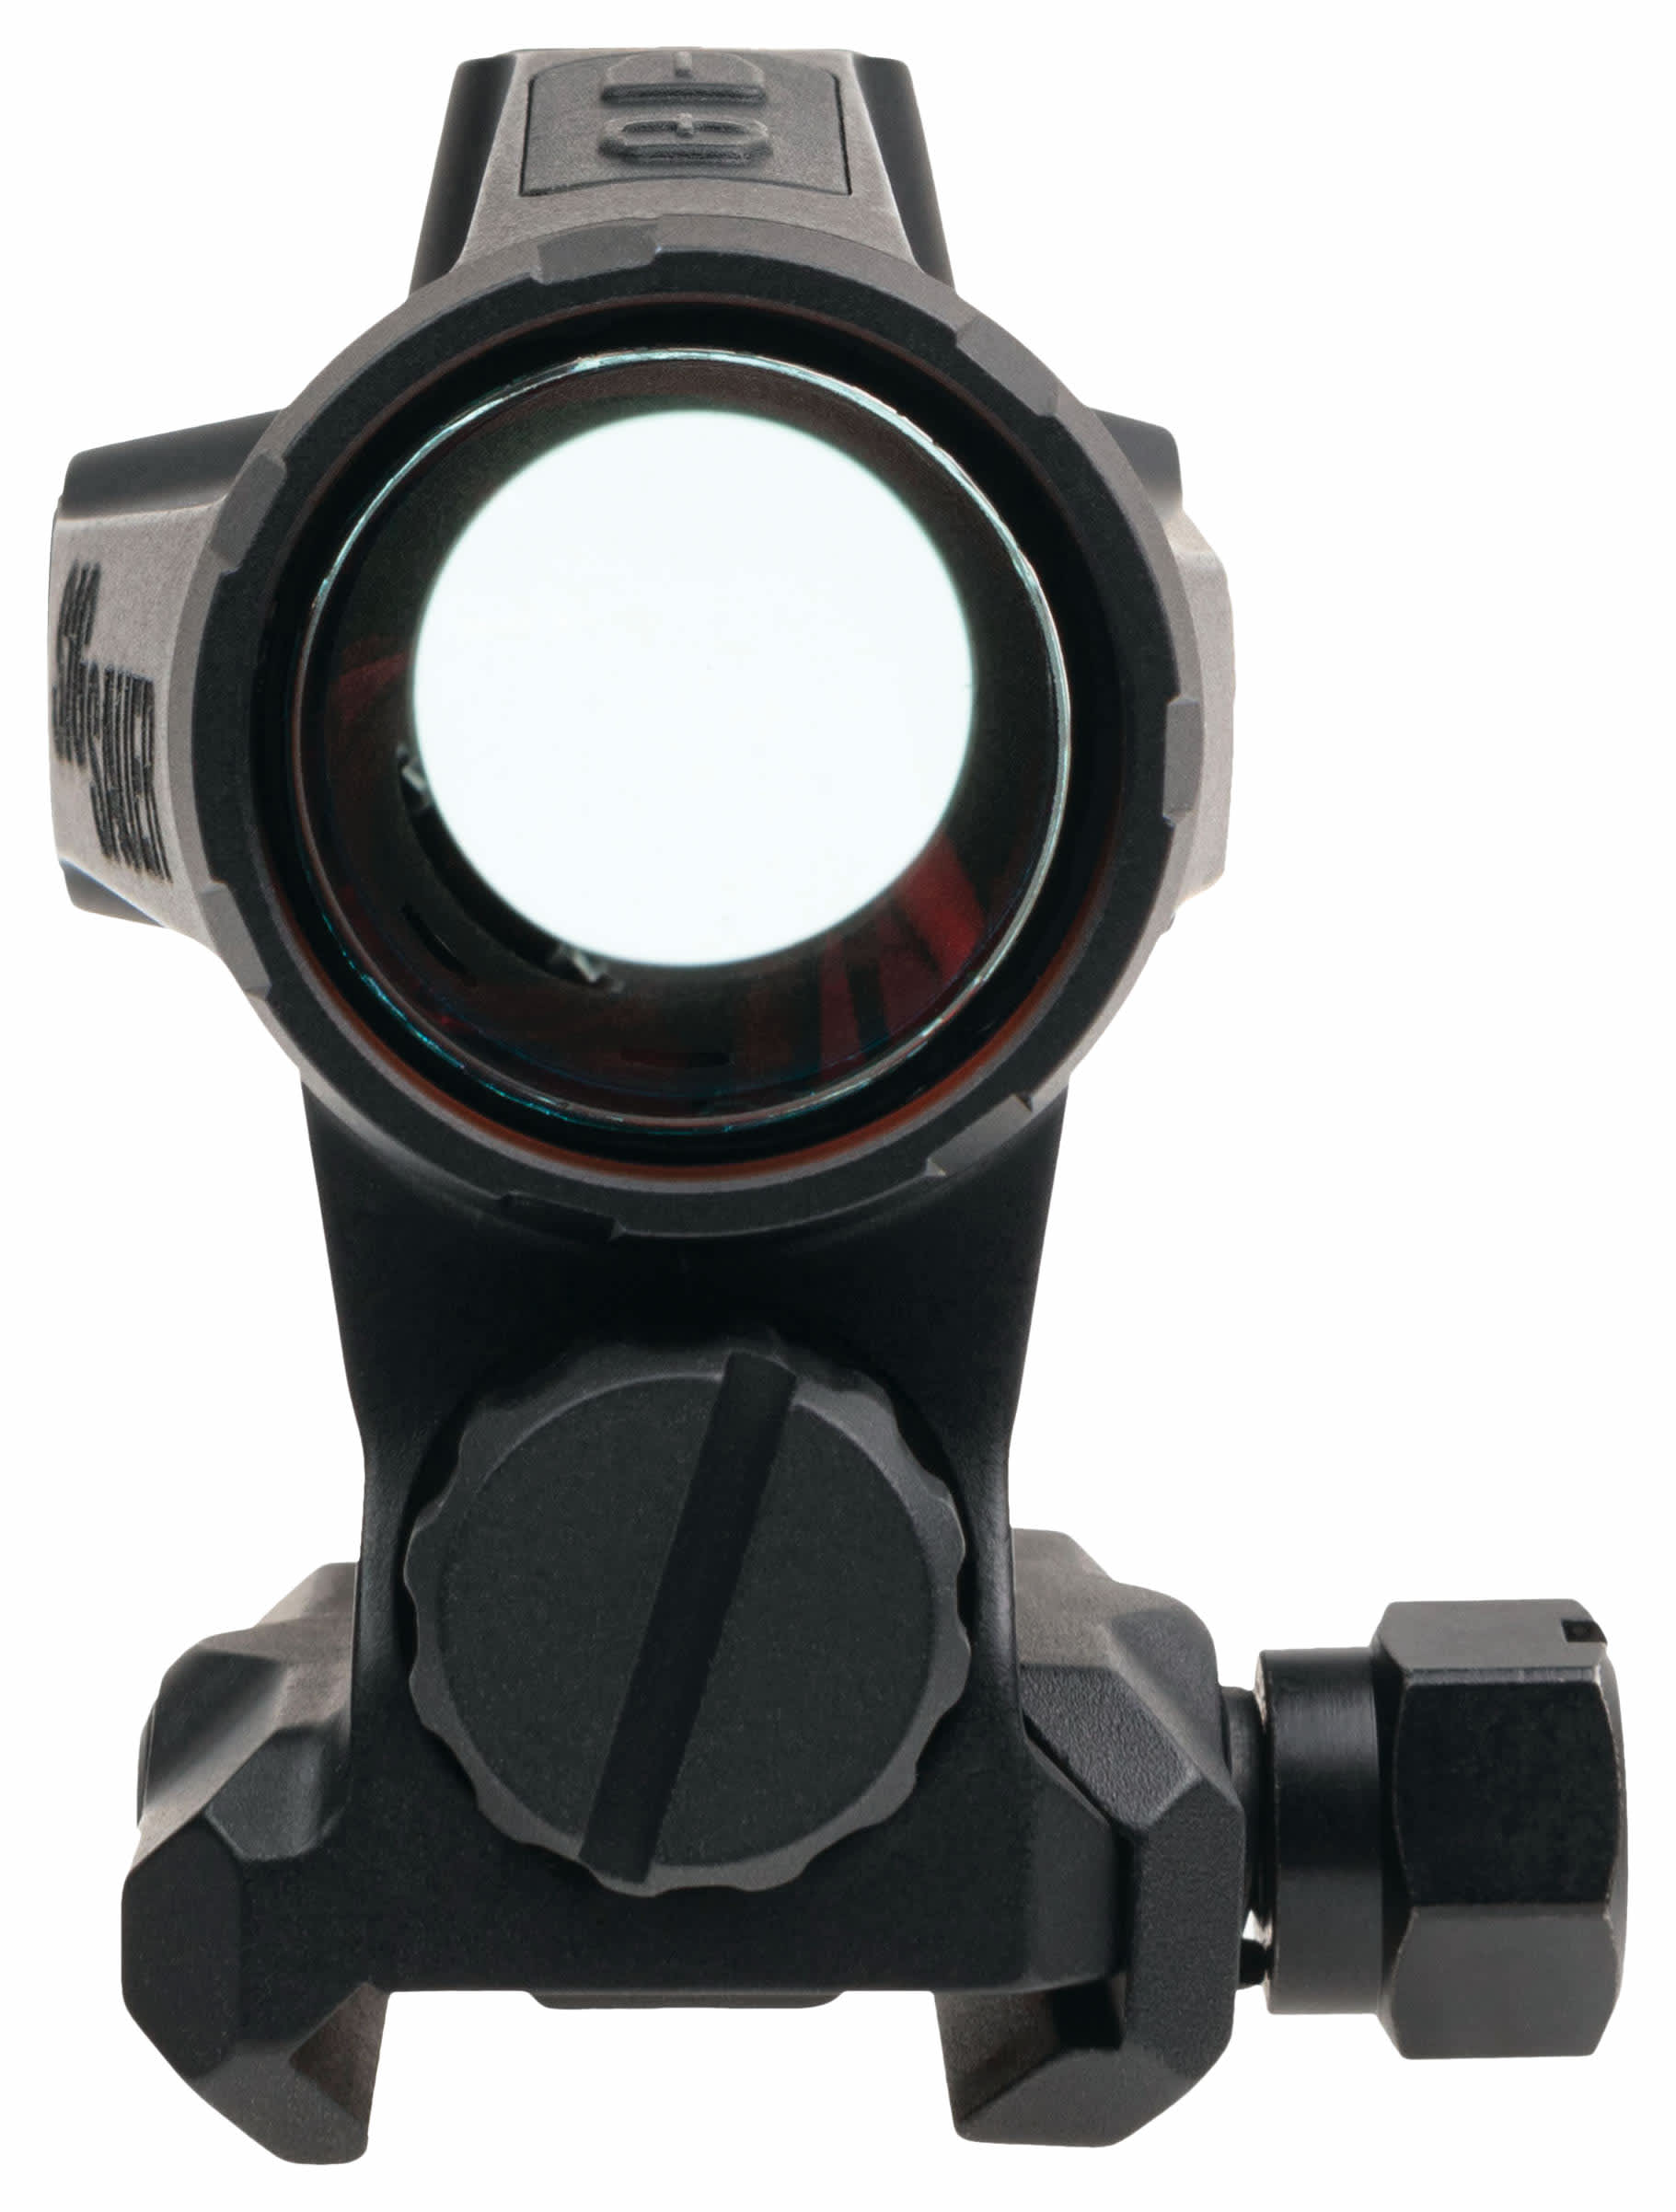 Sig Sauer® Romeo5X Gen II Red-Dot Sight